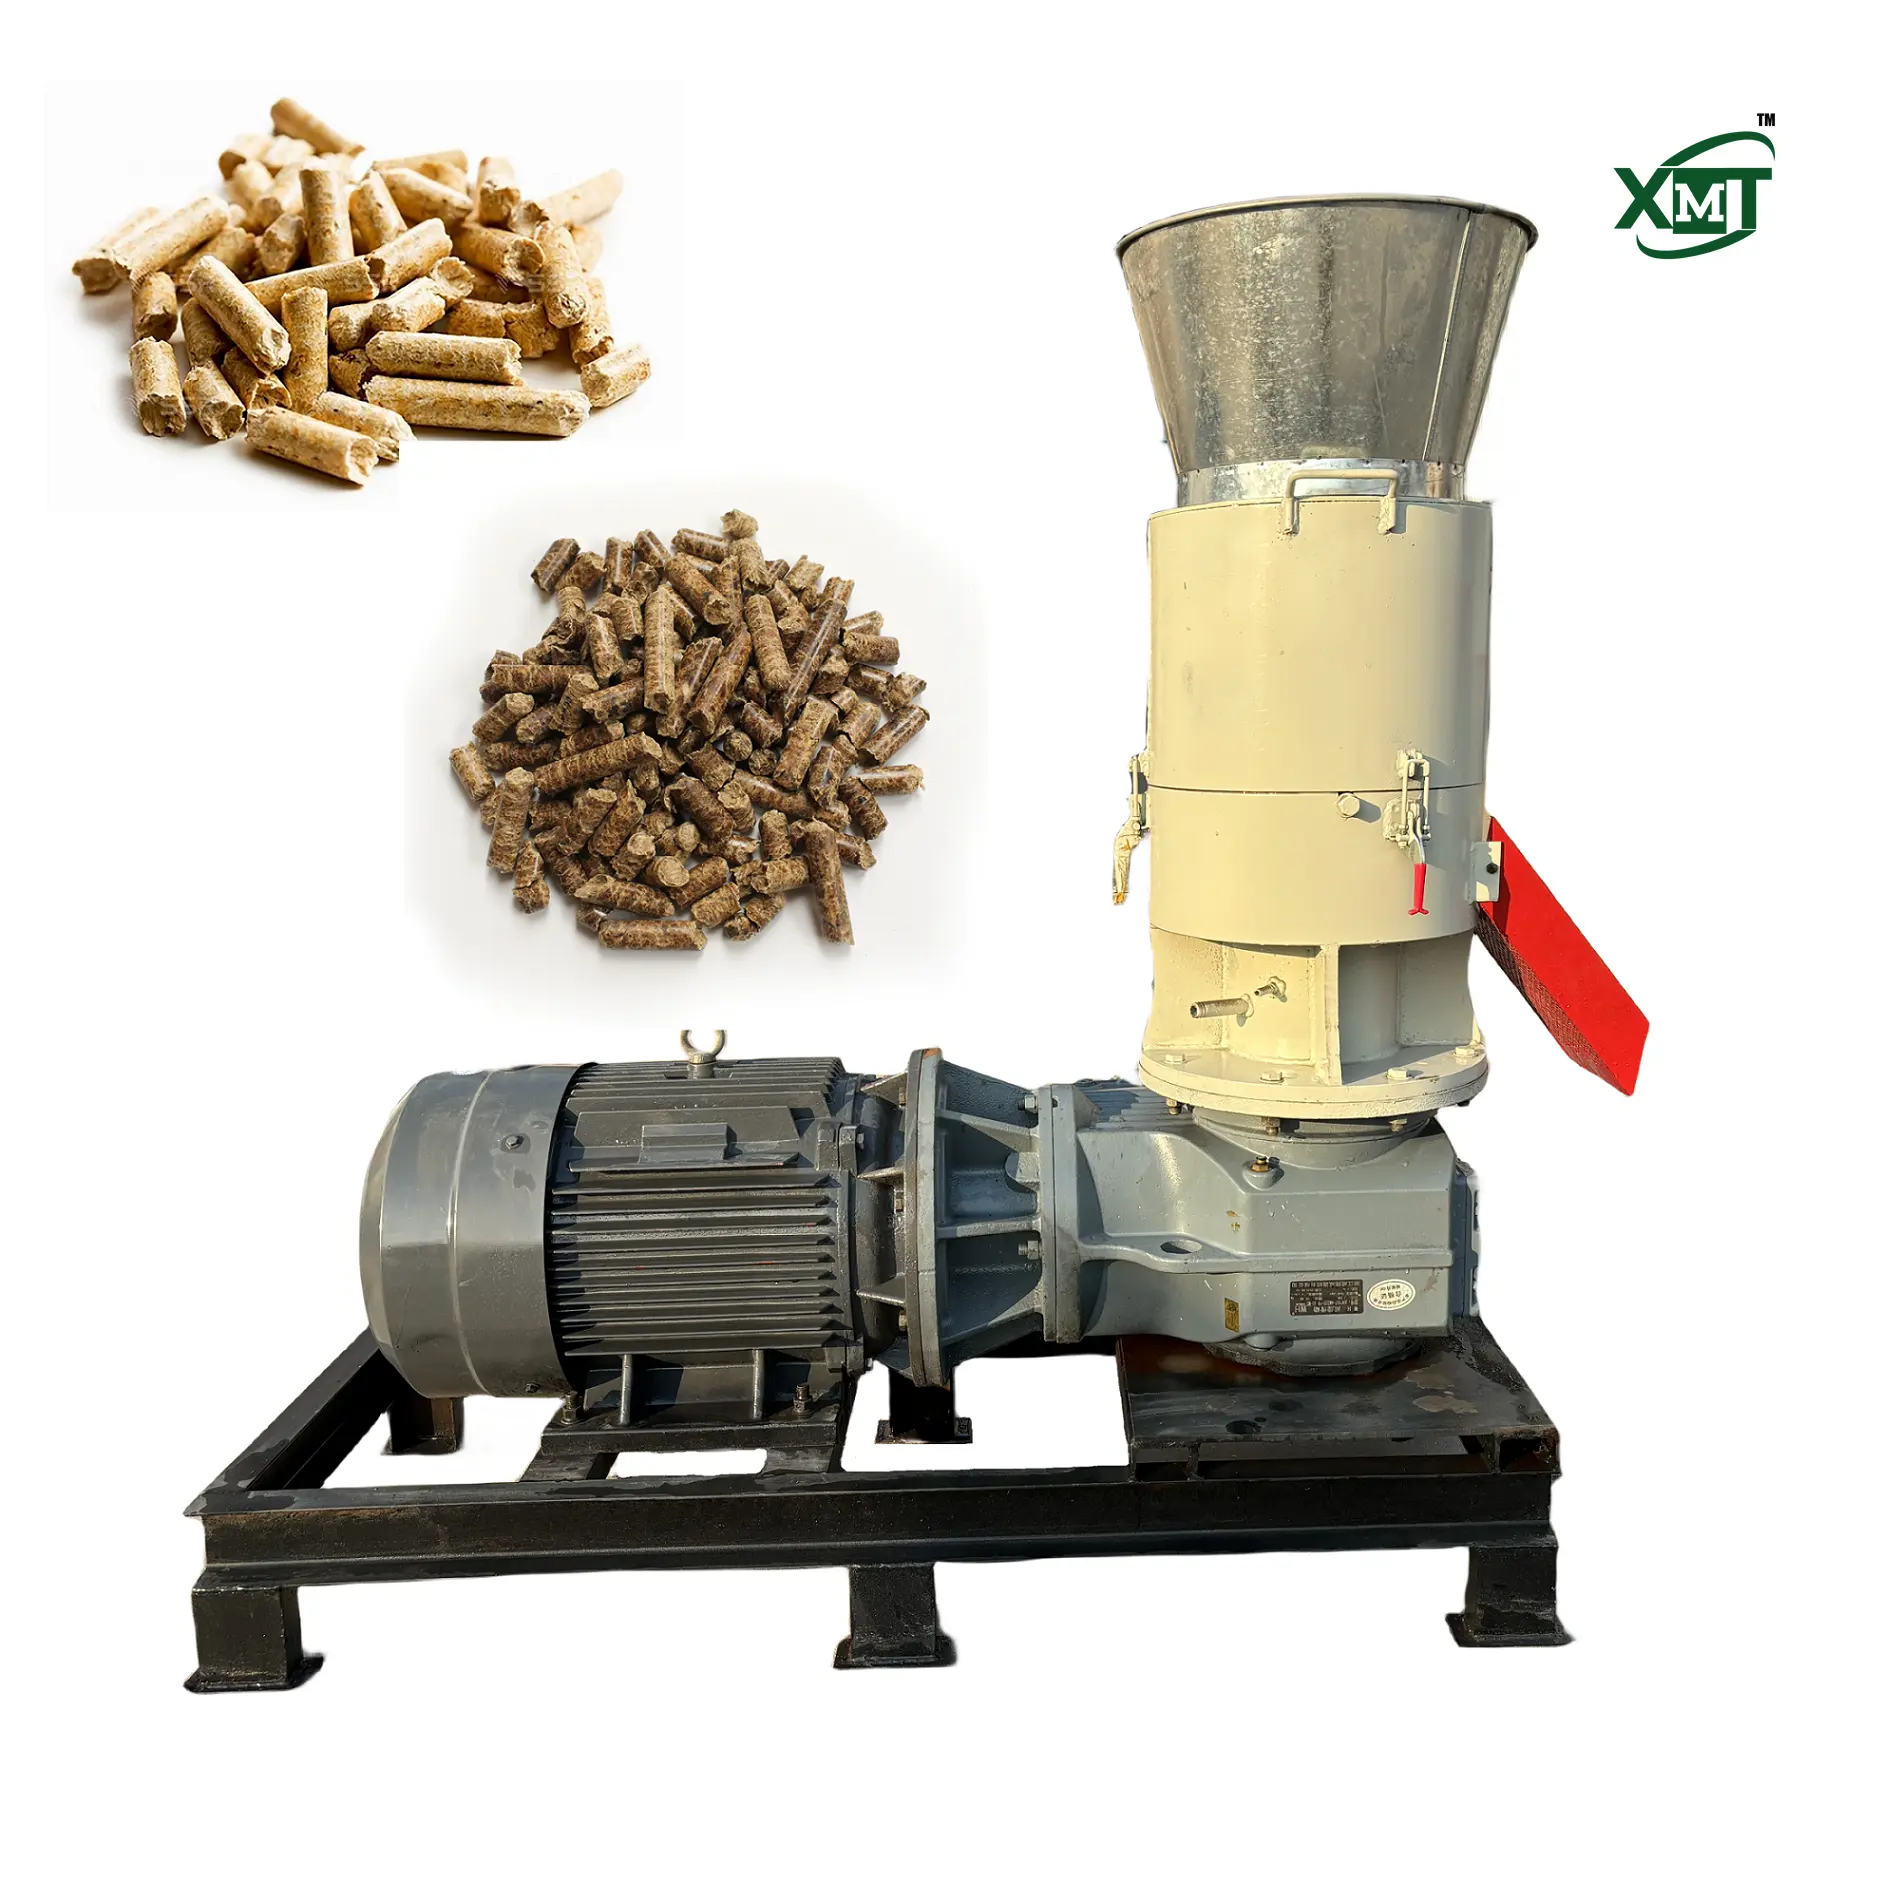 ماكينة صغيرة لكريات الطحن من الكتلة الحيوية المسطحة بسعة 300 كجم/الساعة، ماكينة صنع كريات القش، ماكينة صنع كريات نشارة الخشب